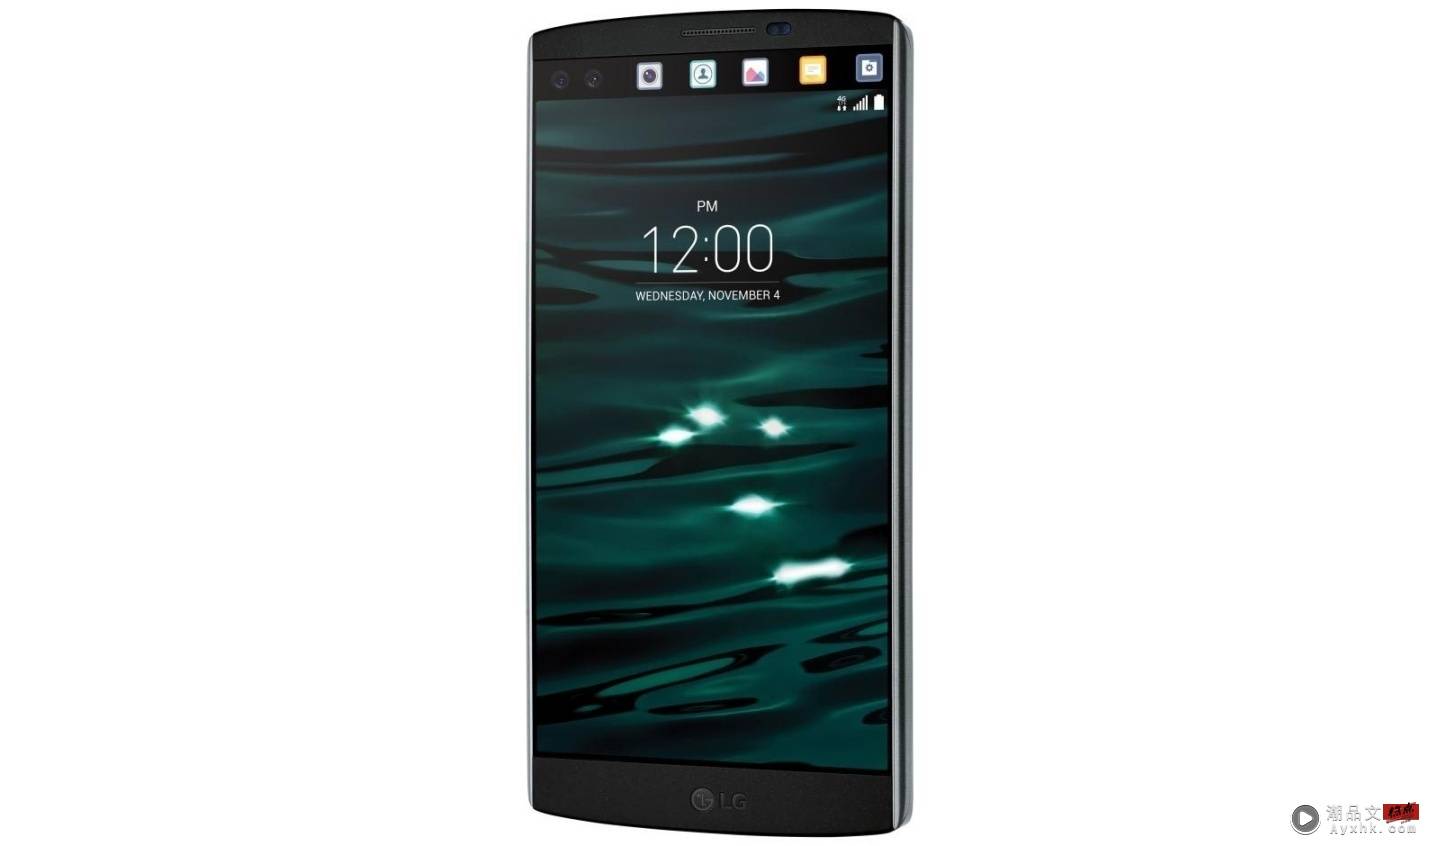 动态岛对 Android 用户来说不稀奇？走入历史的‘ LG V10 ’副萤幕设计其实也超有趣！ 数码科技 图2张